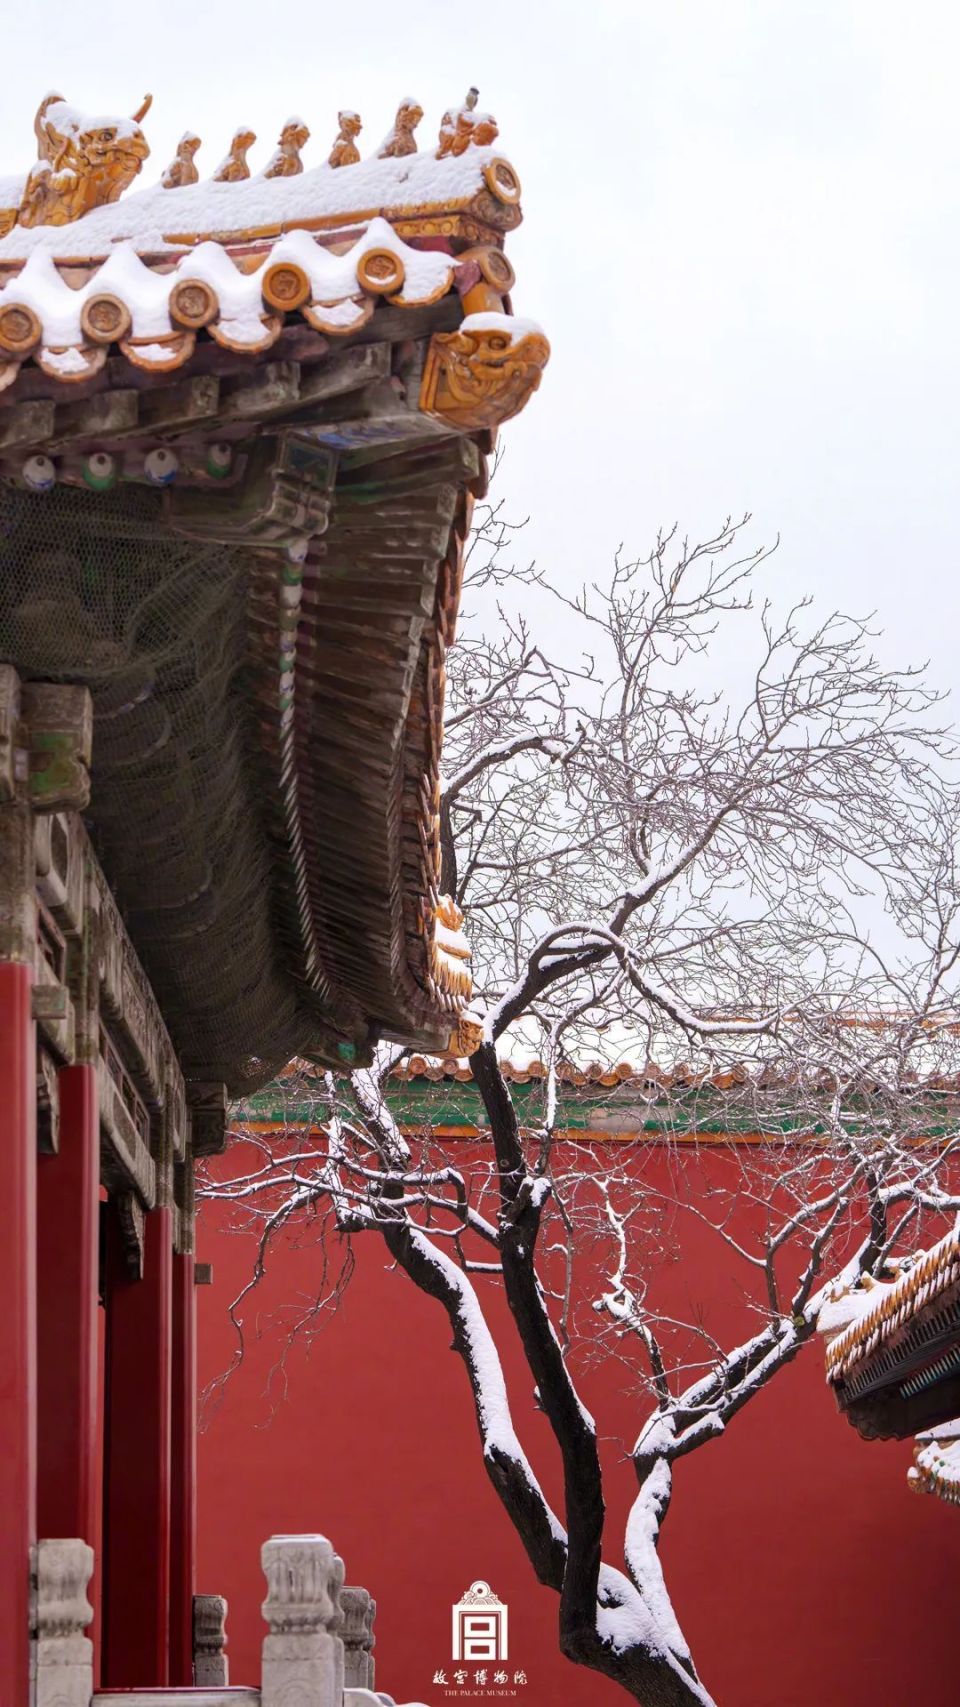 祺然有灵让故宫换上了紫禁城·雪景限定装北京纷纷扬扬的一场大雪白雪